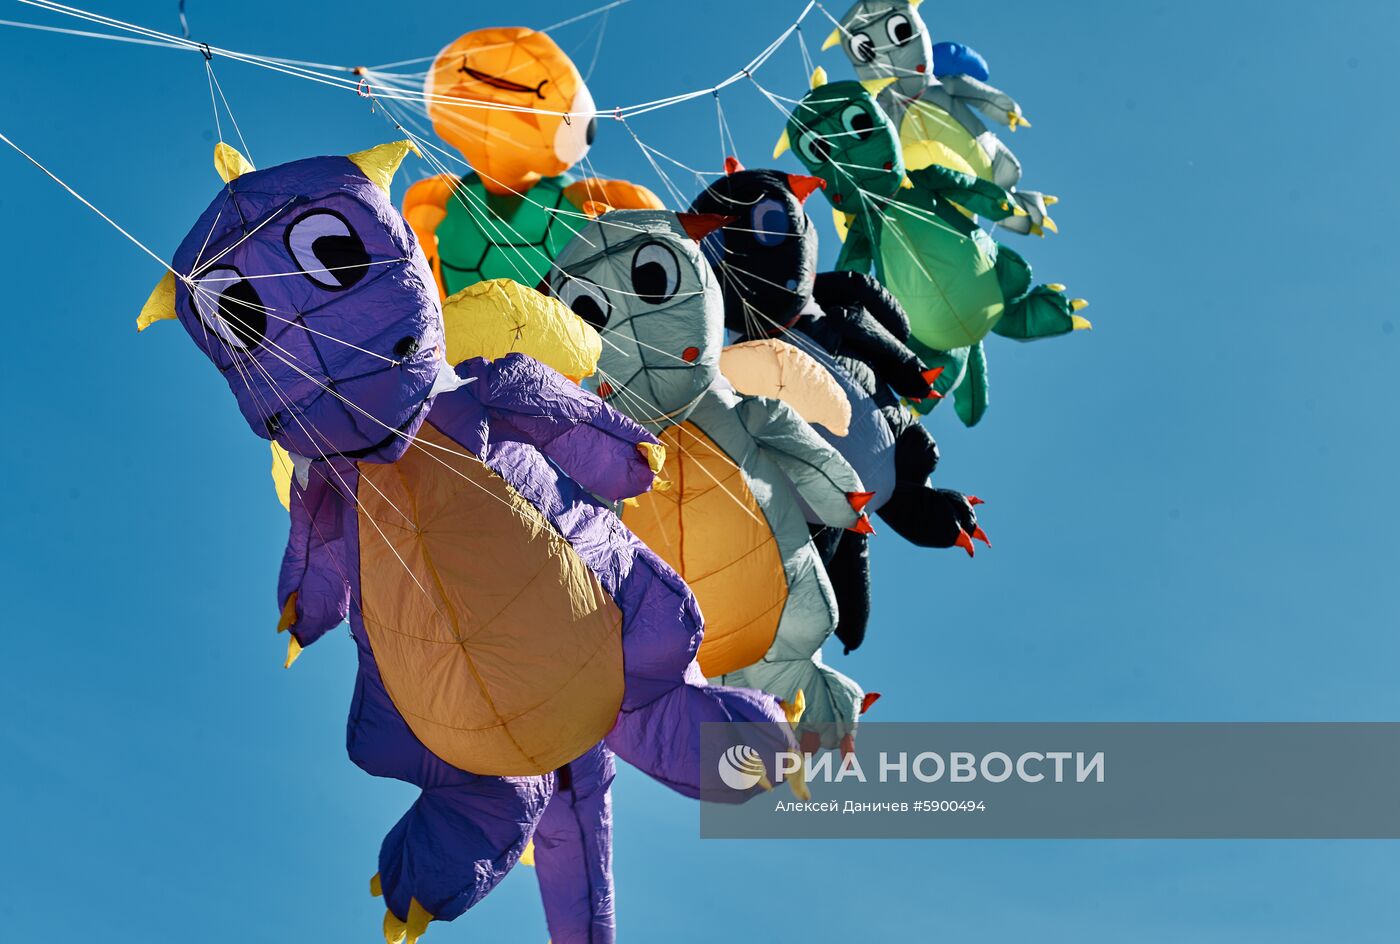 III Международный фестиваль воздушных змеев "Фортолет"